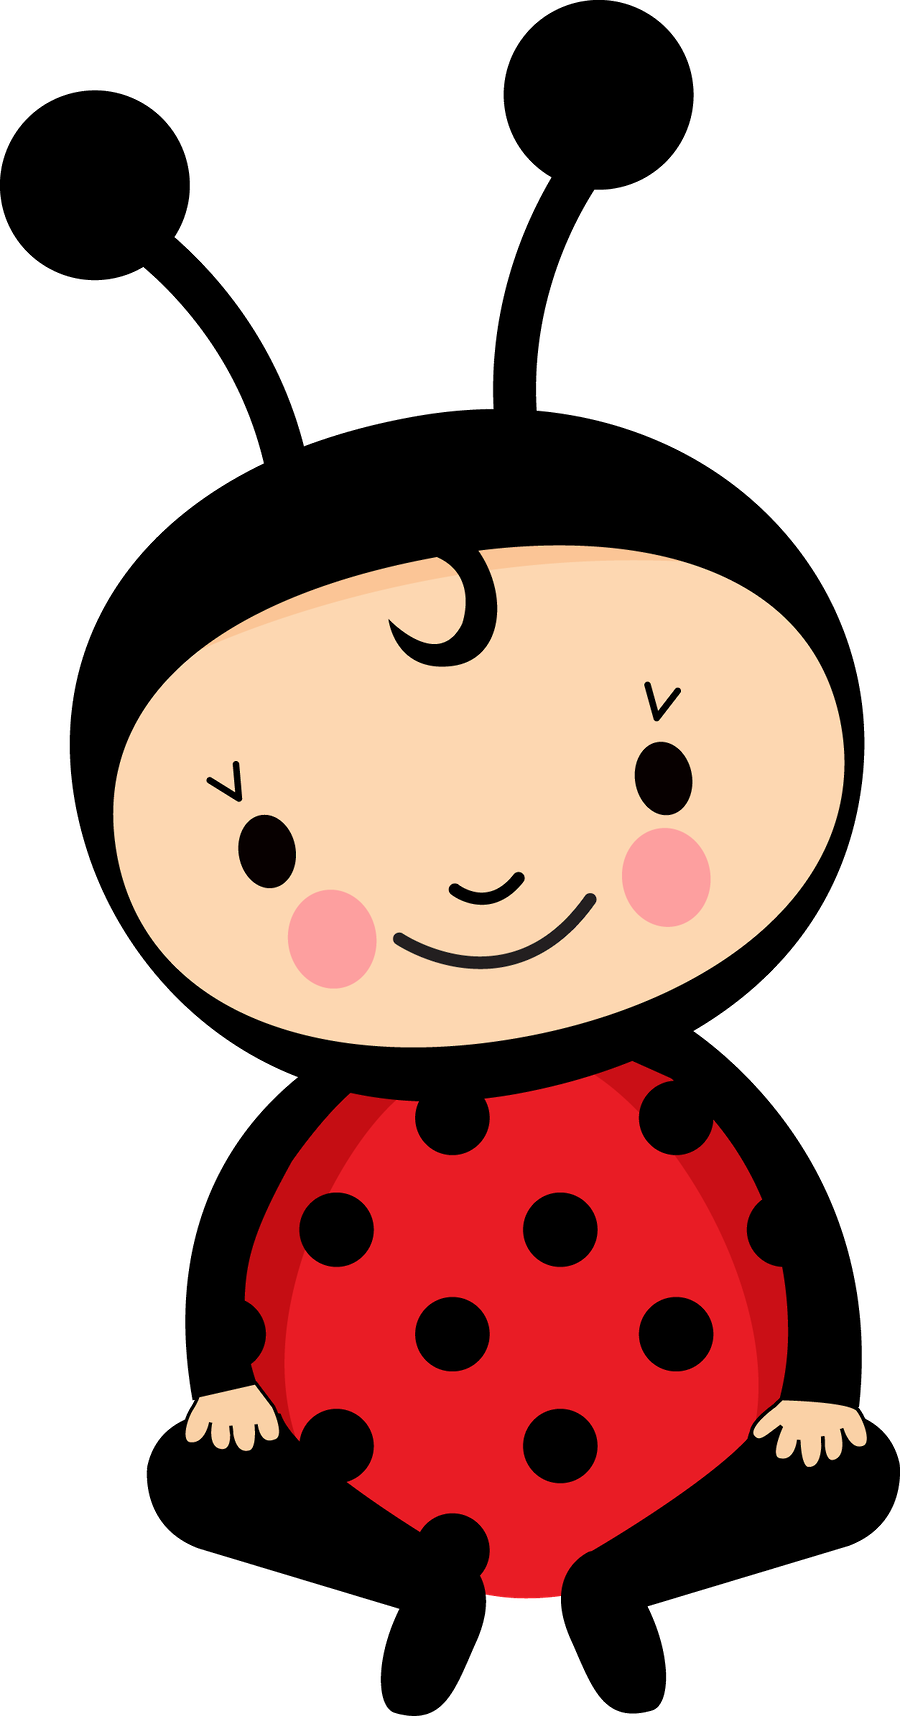 Costume ladybug girl